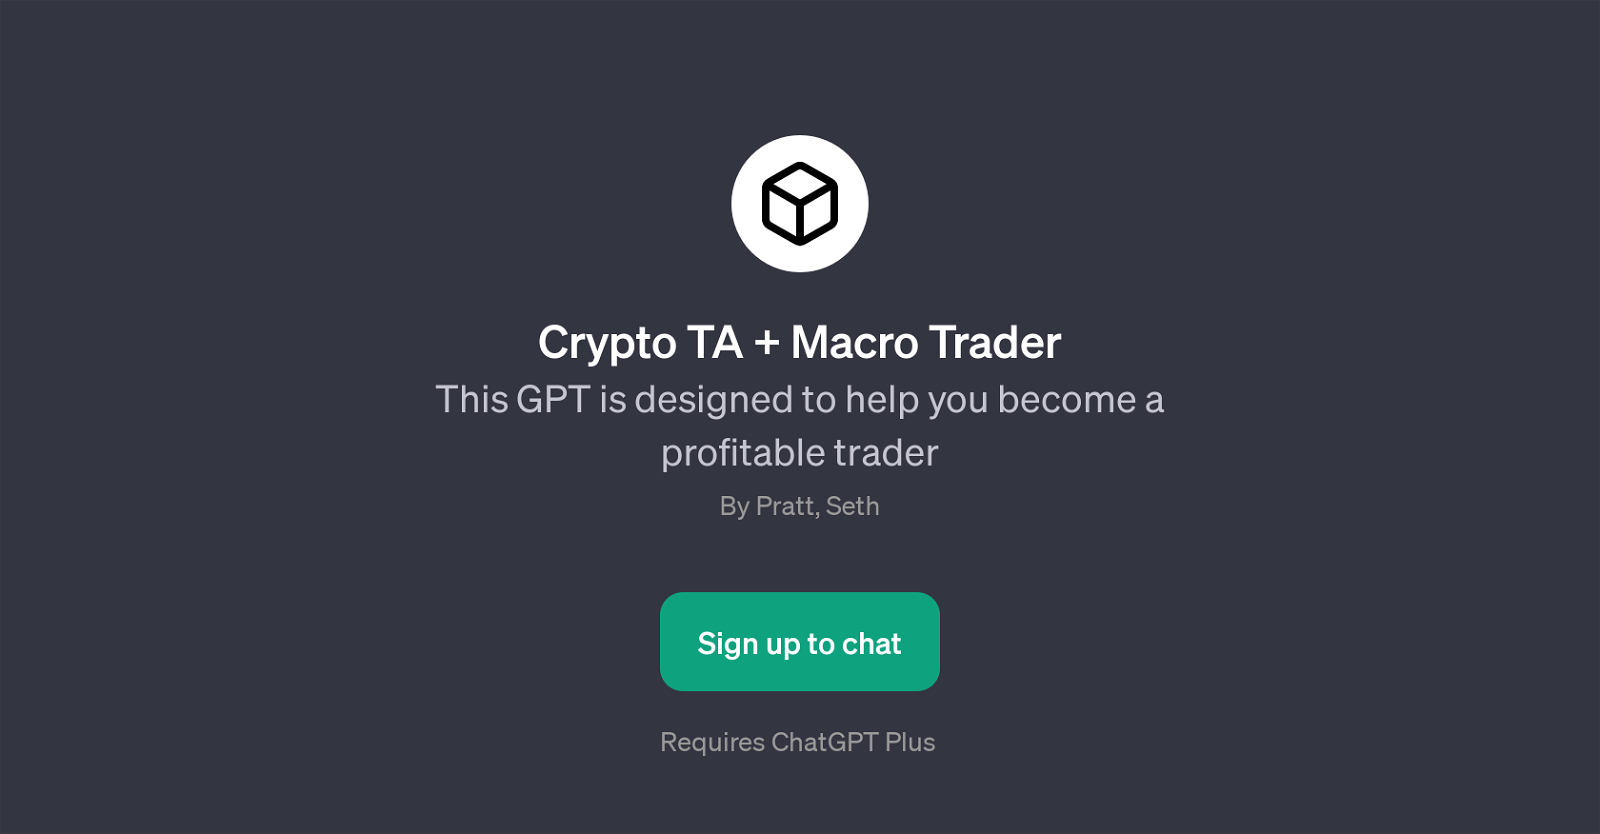 Crypto TA + Macro Trader website